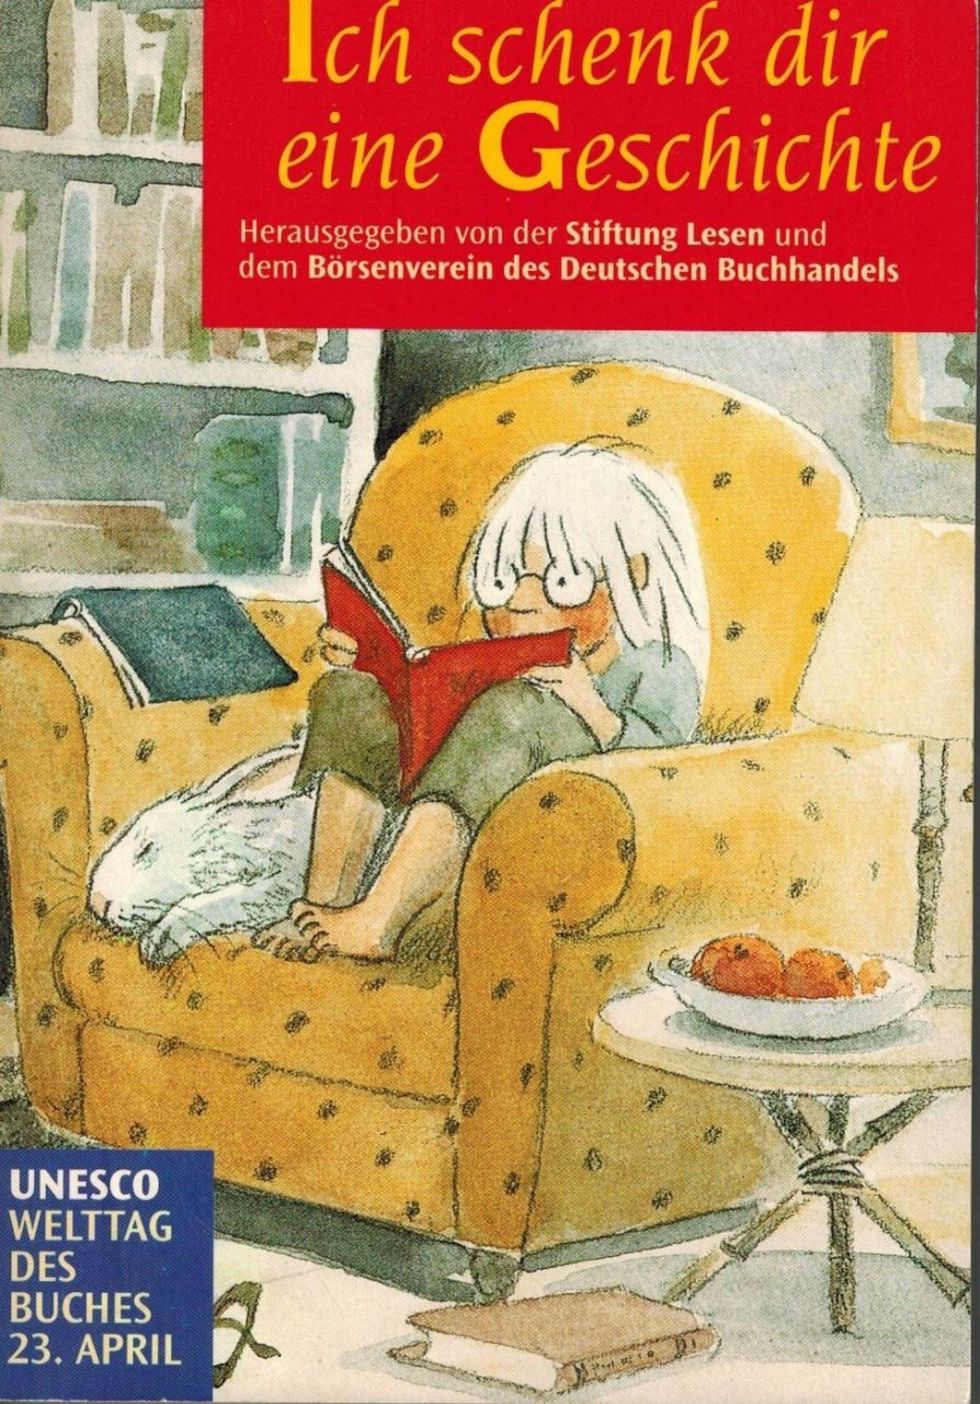 Stiftung-Lesen-Börsenverein-bes-Deutschen-Buchhandels-Hg+Ich-schenk-dir-eine-Geschichte